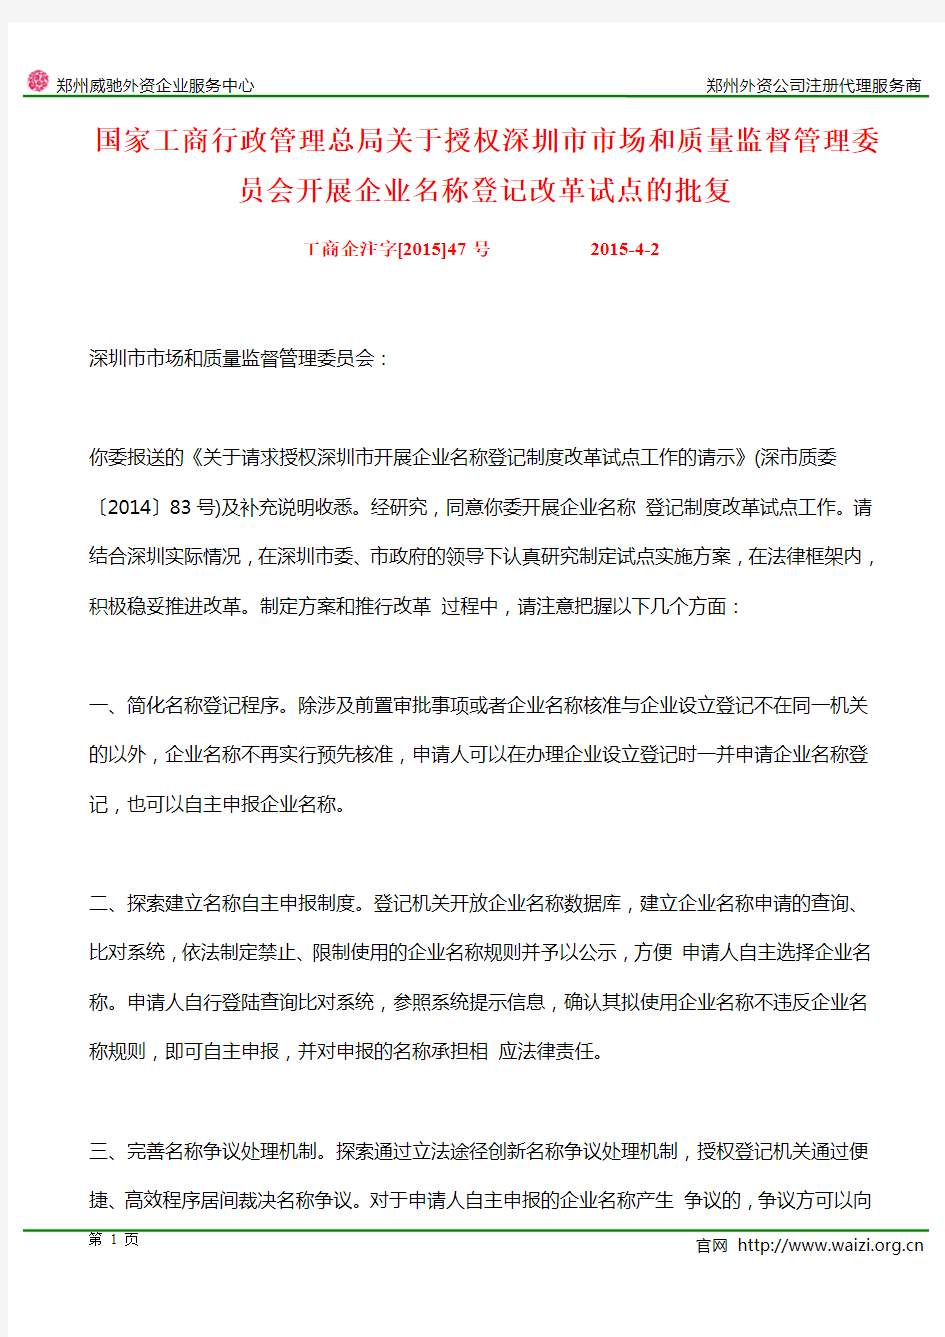 工商企注字[2015]47号《关于授权深圳市市场和质量监督管理委员会开展企业名称登记改革试点的批复》